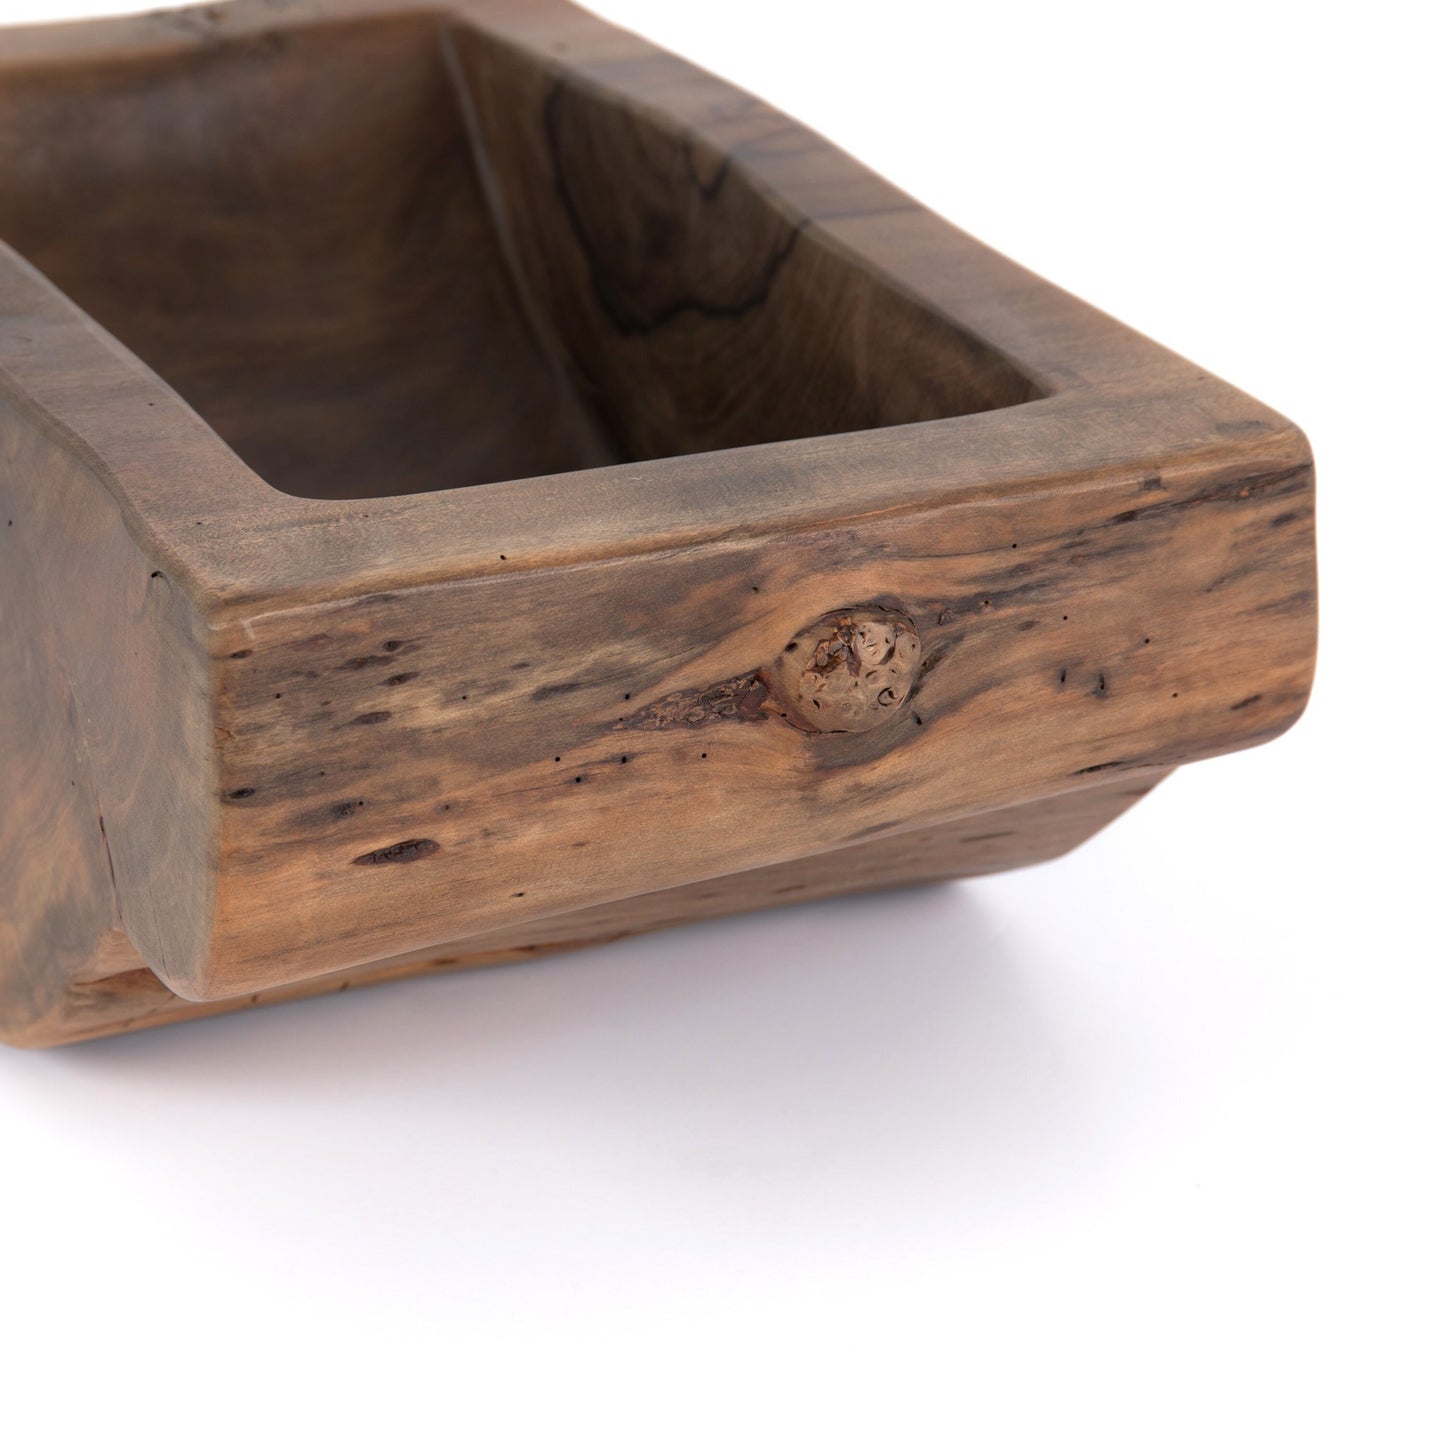 Centro wood bowl-ochre